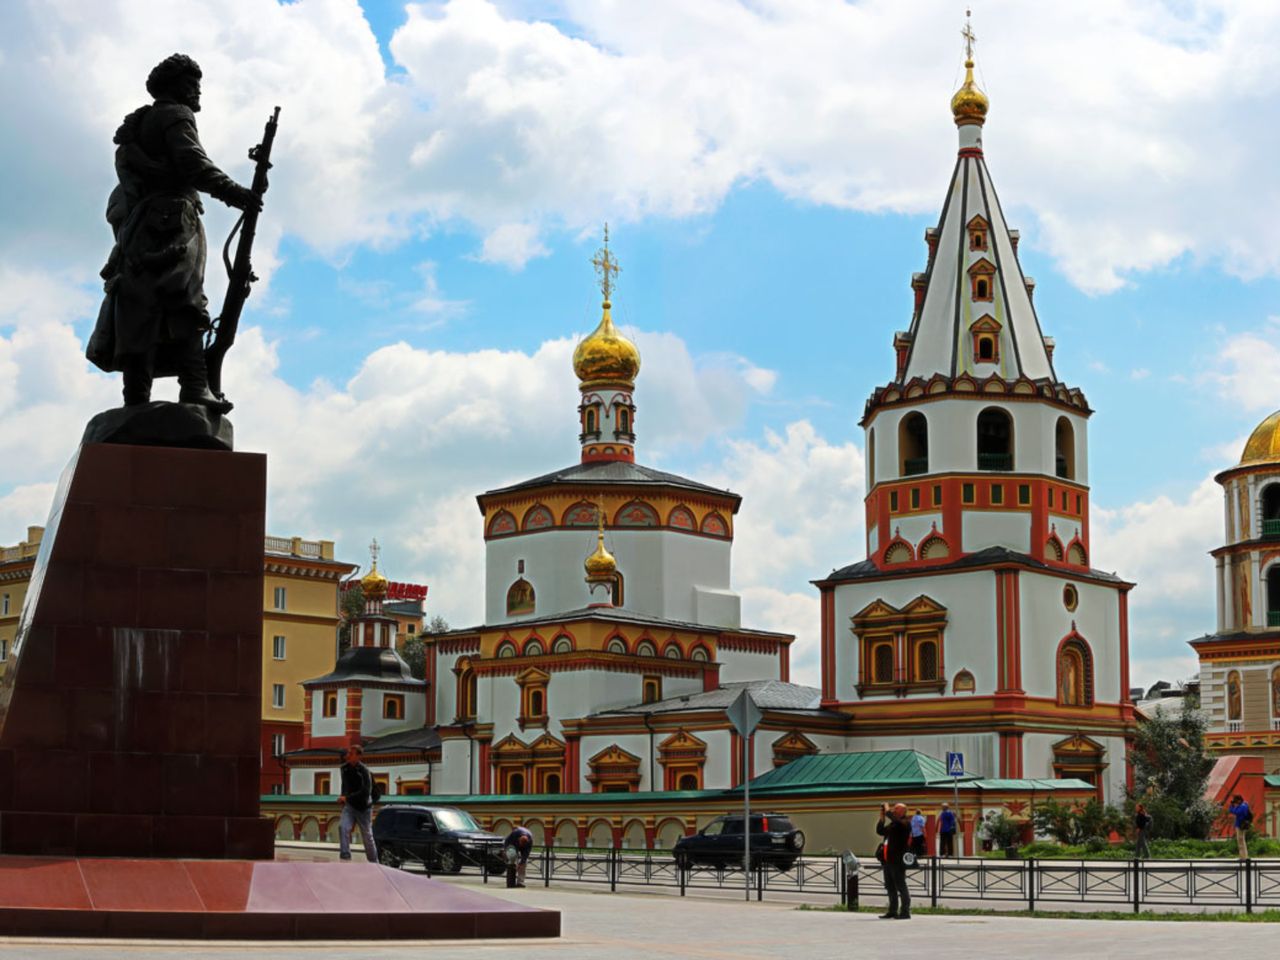 Иркутск исторический | Цена 5500₽, отзывы, описание экскурсии